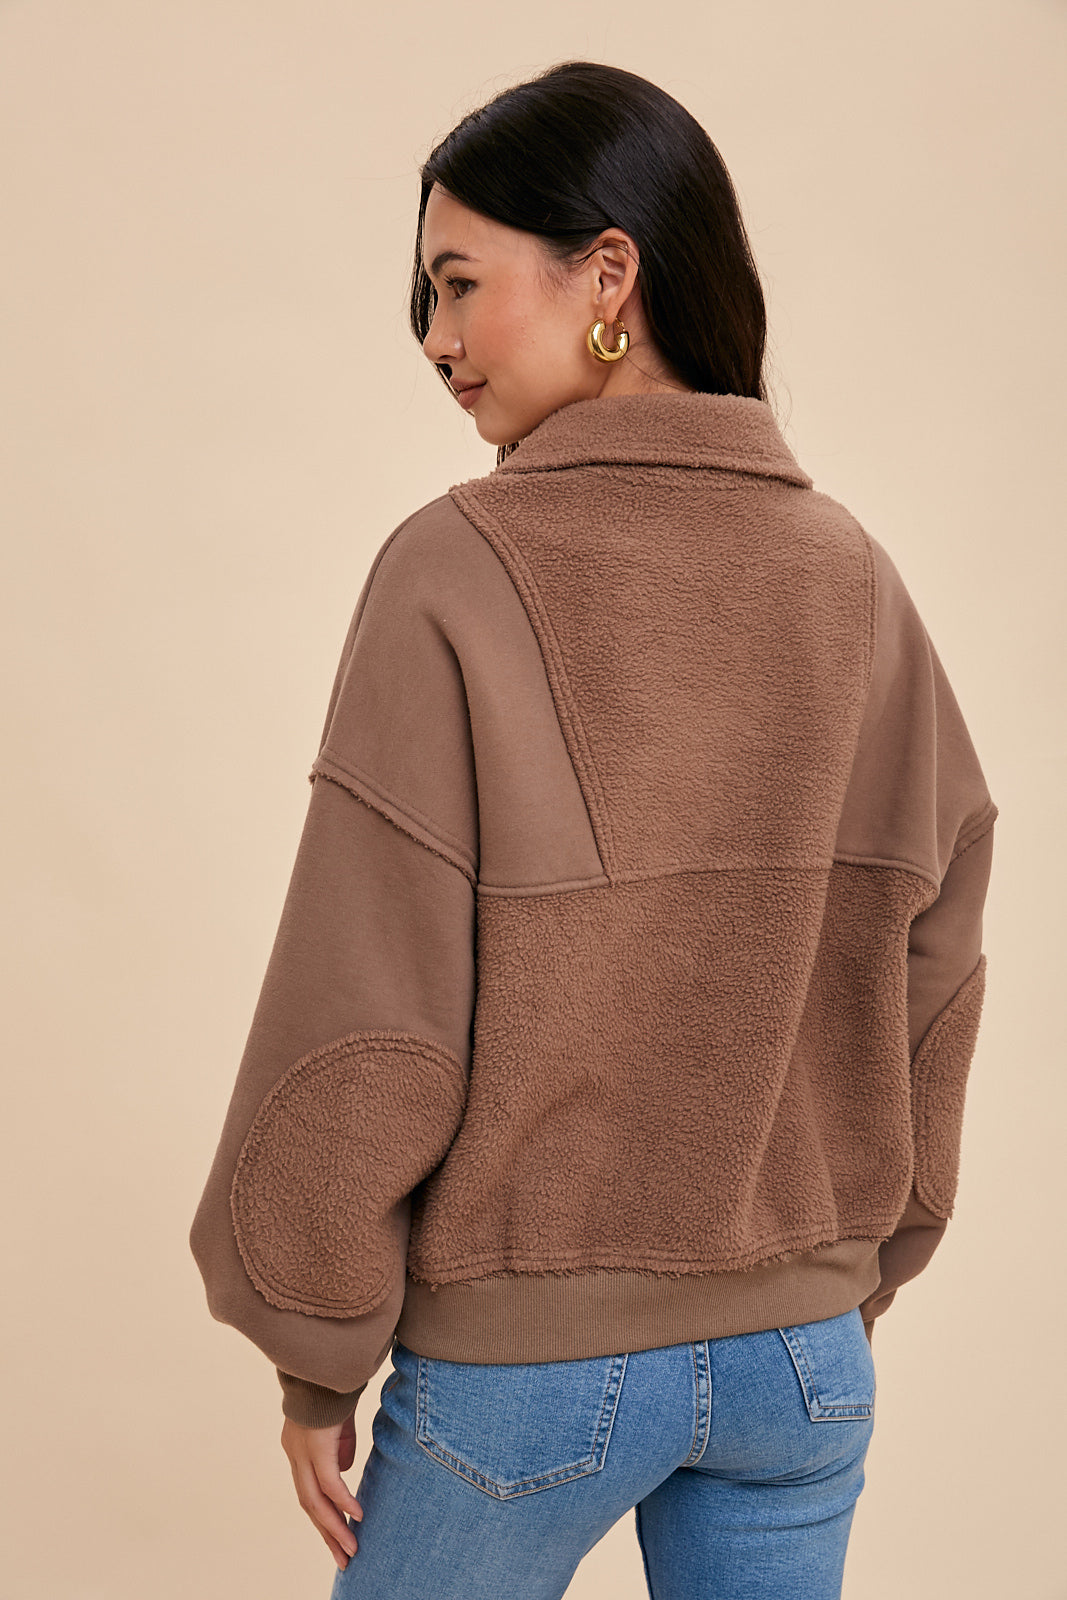 Contrast Reversed Fleece 1/4 Zip Pullover